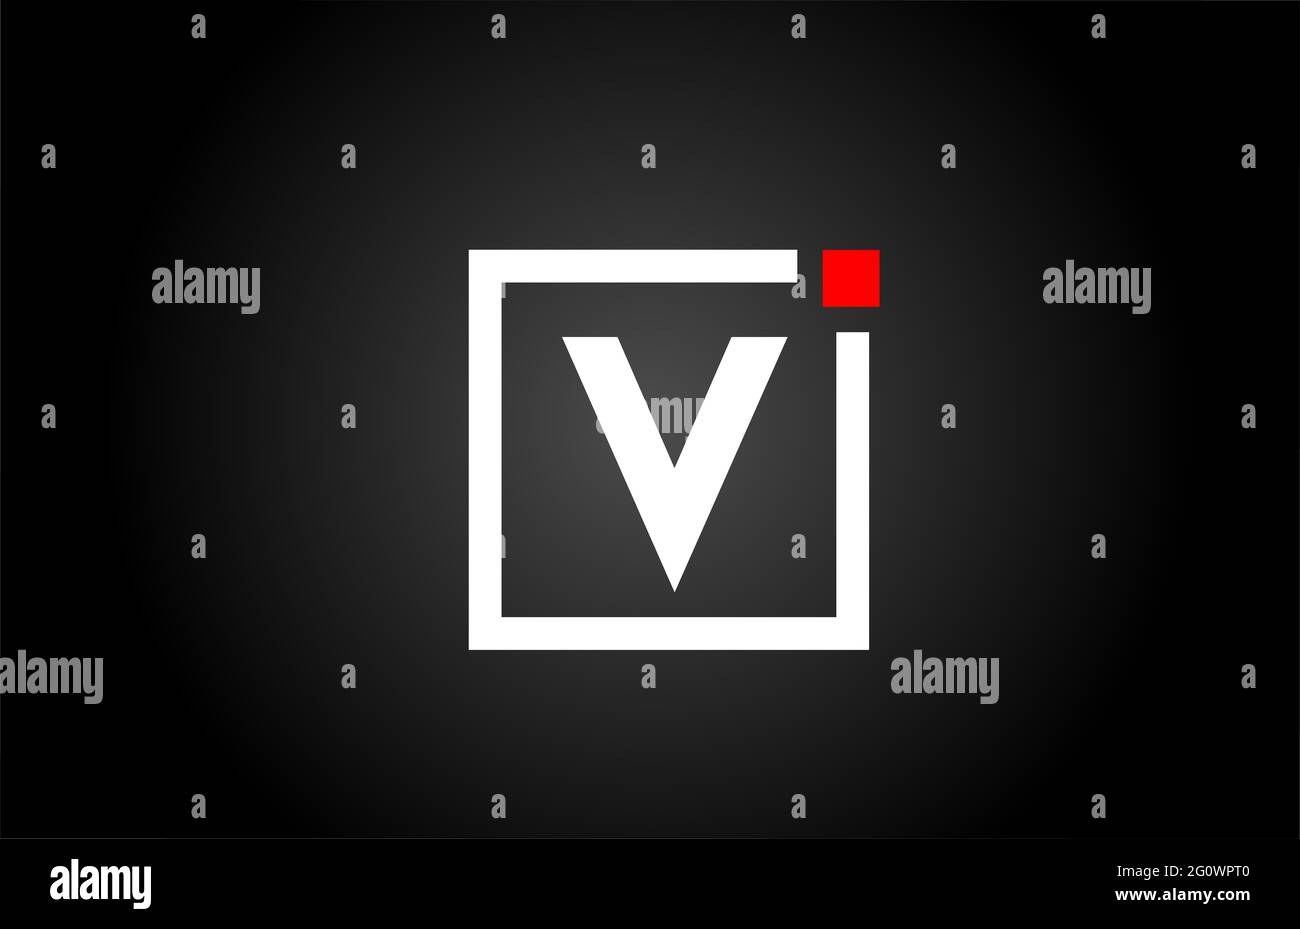 Logo dell'icona con lettera V in bianco e nero. Design aziendale e aziendale con punto quadrato e rosso. Modello di identità aziendale creativa Foto Stock